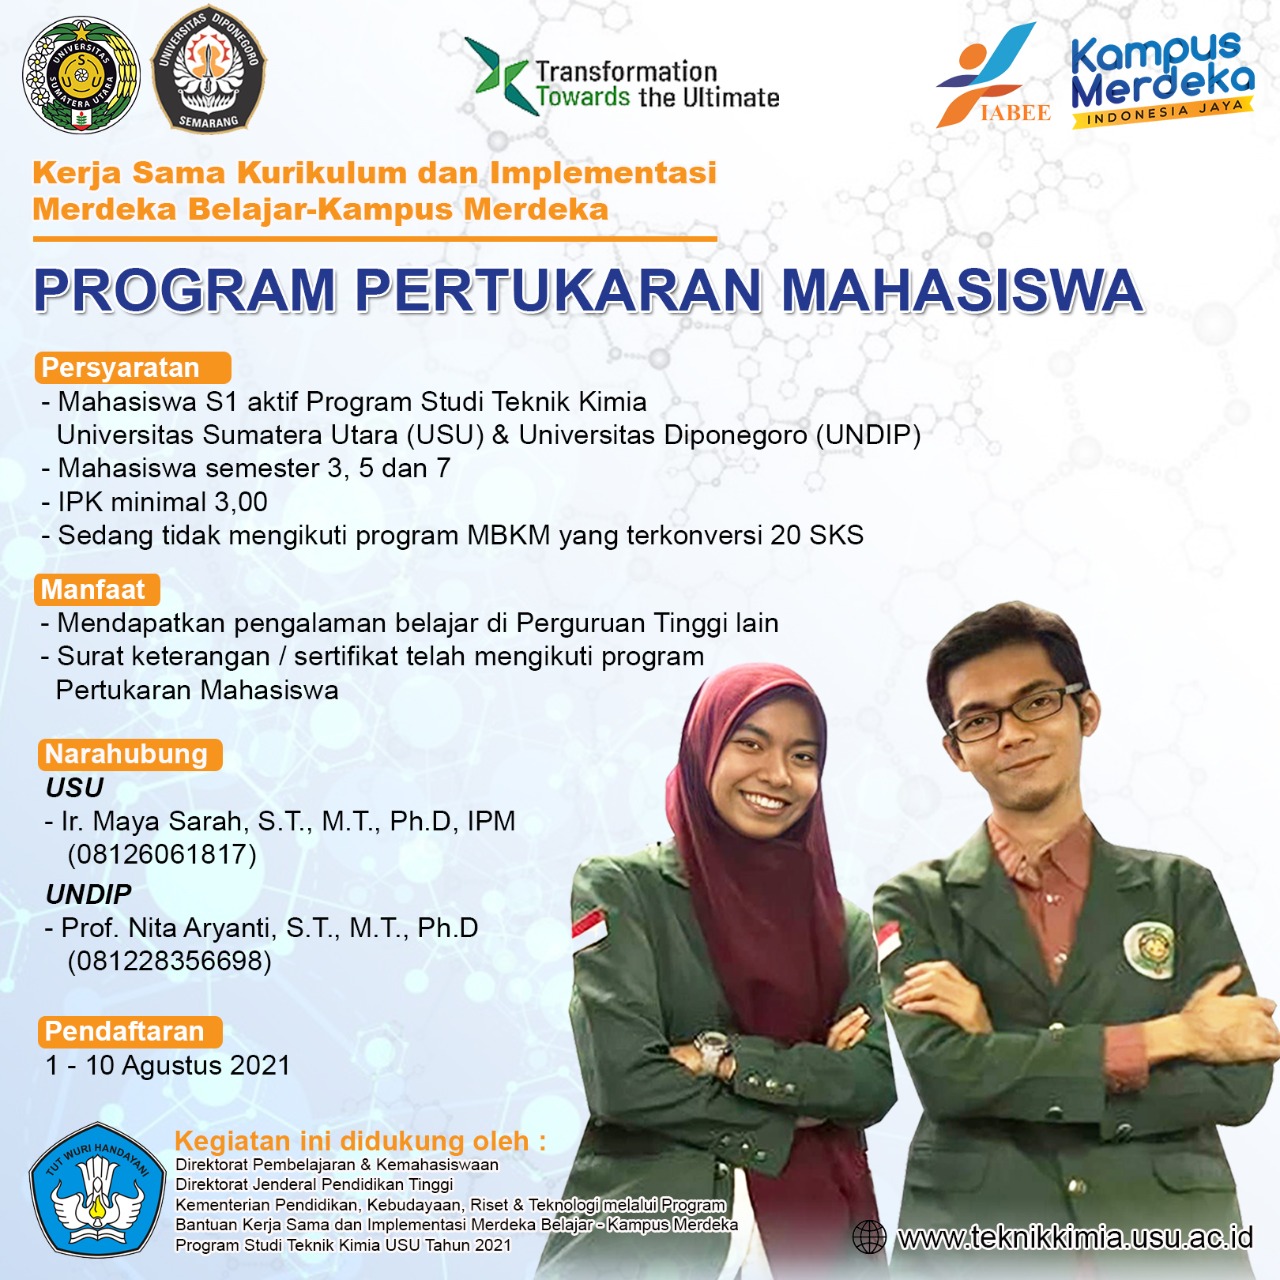 Program Pertukaran dengan Universitas Diponegoro